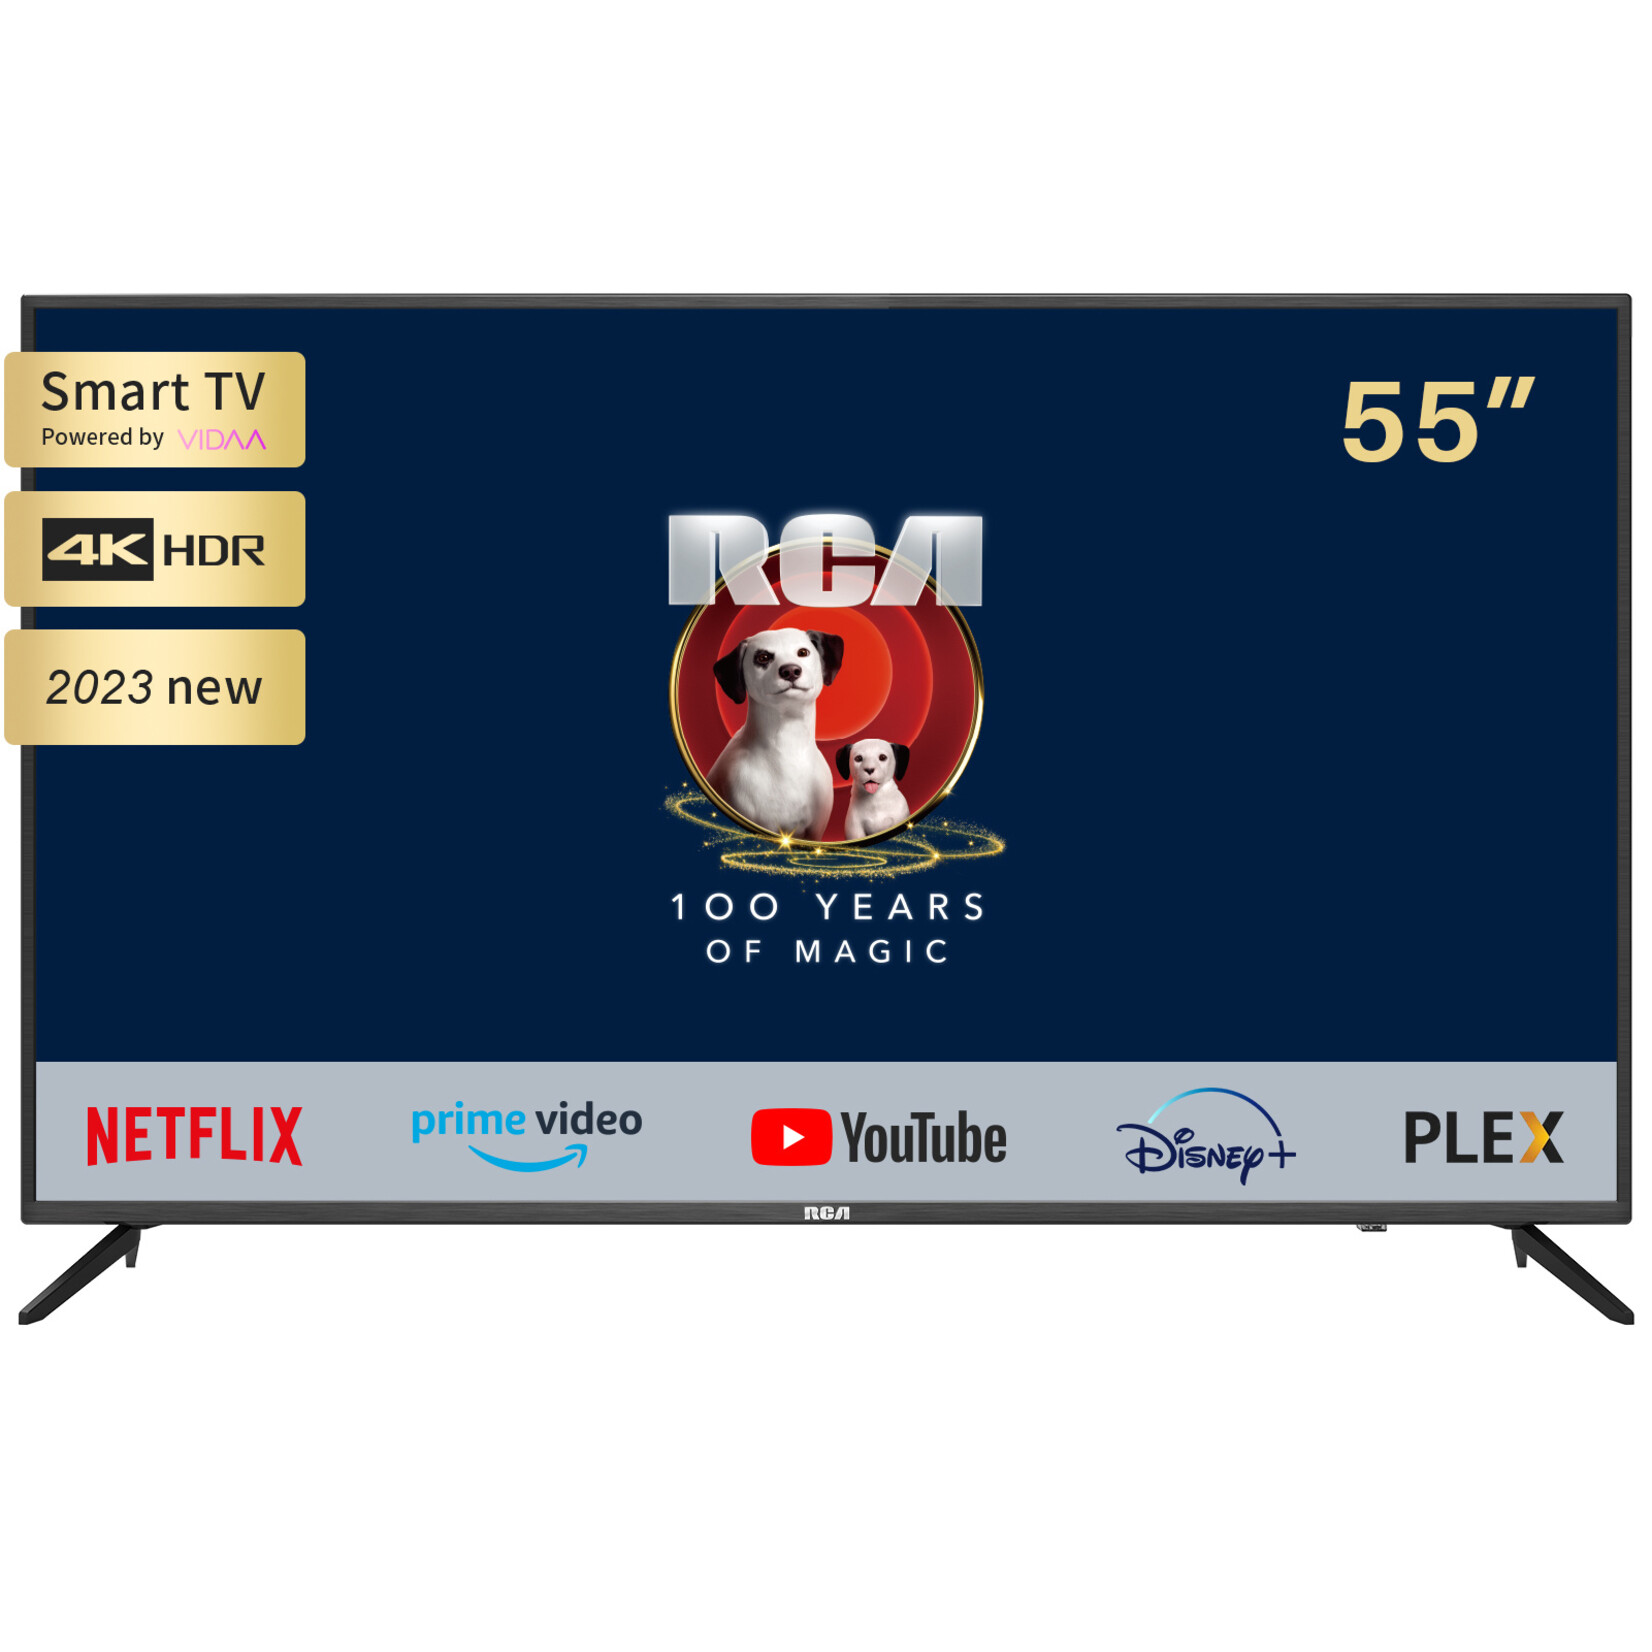 RCA RCA  iRV55H3 Smart TV 55 pollici (140 cm) Televisore 4K con HDR, Netflix, Prime Video, Rakuten TV, DAZN, Disney+, Youtube, UVM, Wifi, controllo vocale, Triple-Tuner DVB-T2 / S2 / C